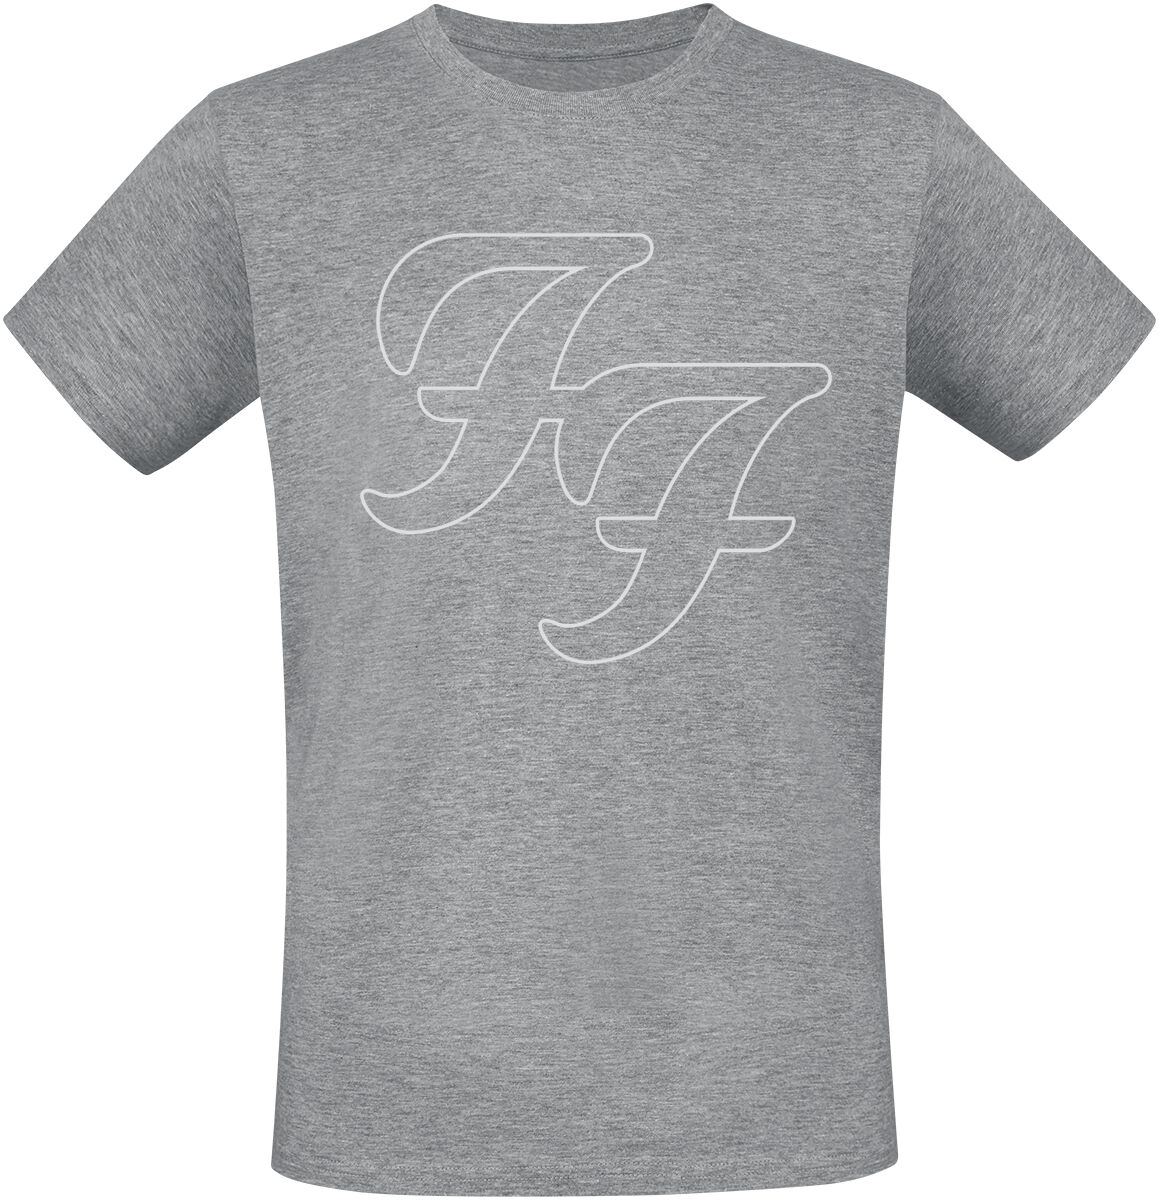 Foo Fighters T-Shirt - But Here We Are - S bis 3XL - für Männer - Größe S - grau meliert  - Lizenziertes Merchandise! von Foo Fighters